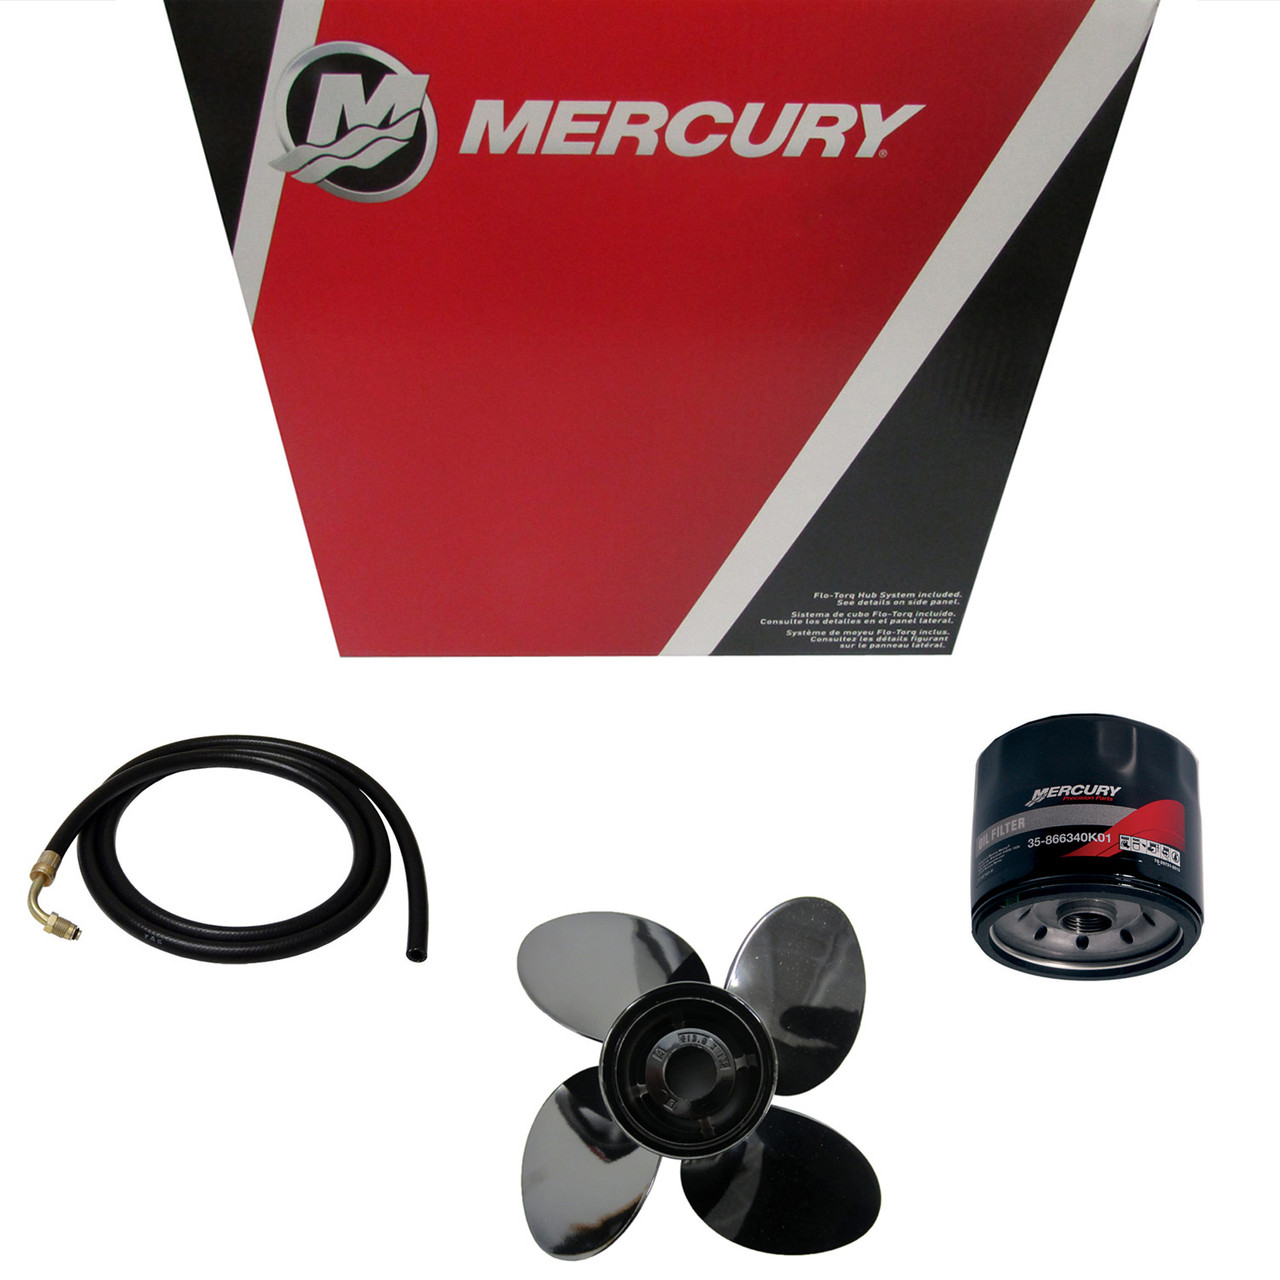 Mercury Marine / Mercruiser New OEM Promax 14.5X24 Rh, 48-8M0079699